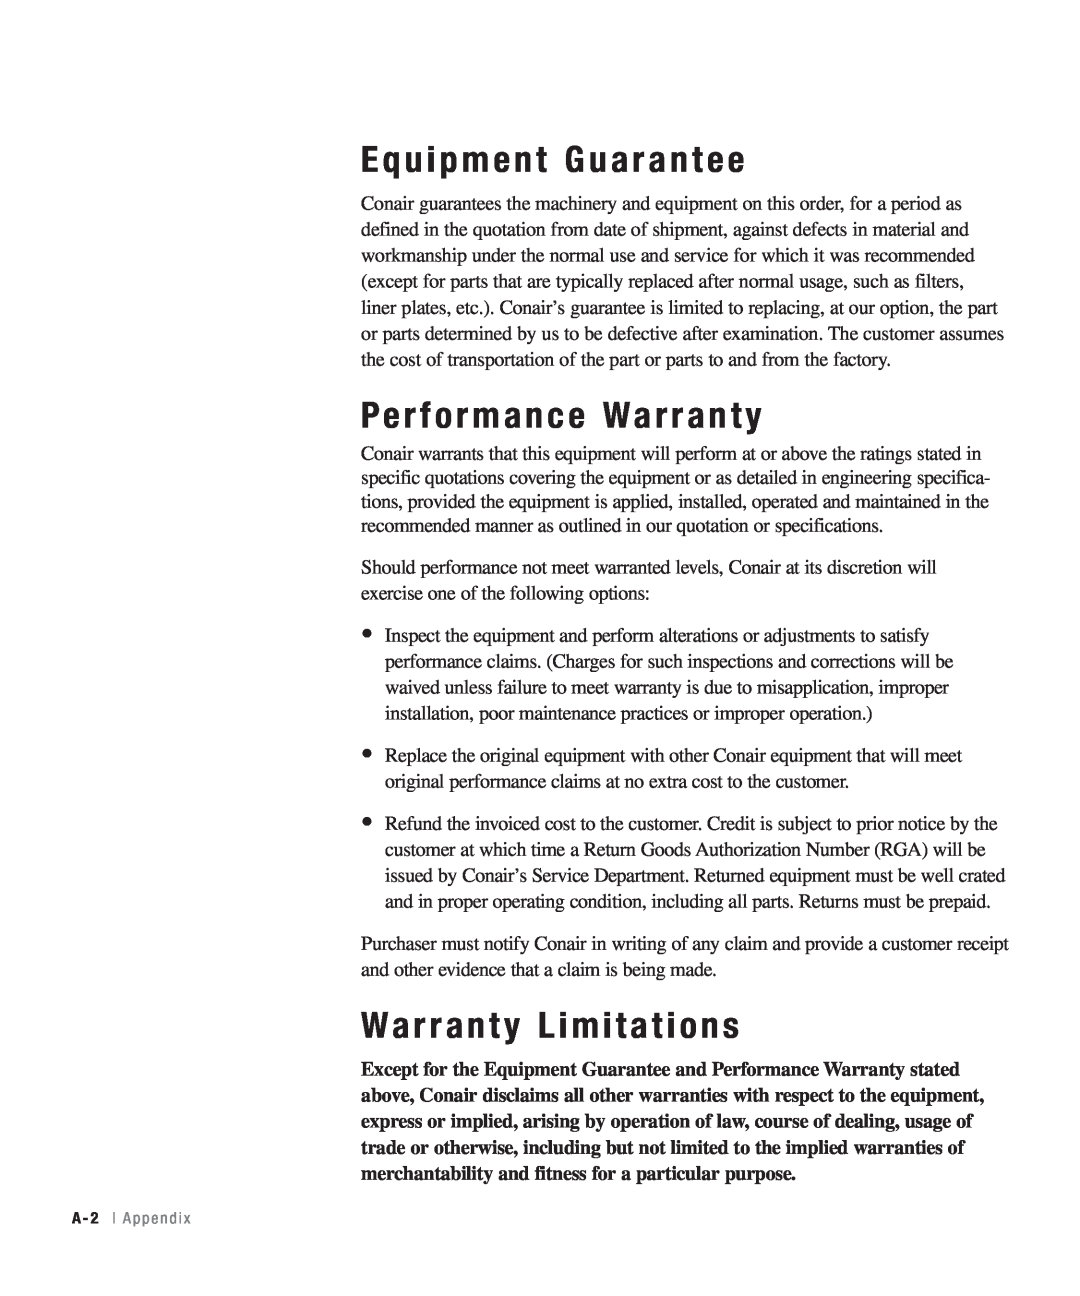 Conair 25, 15, 50, 100 specifications Equipment Guarantee, Performance Warranty, Warranty Limitations, A - 2 l A p p e n d i 